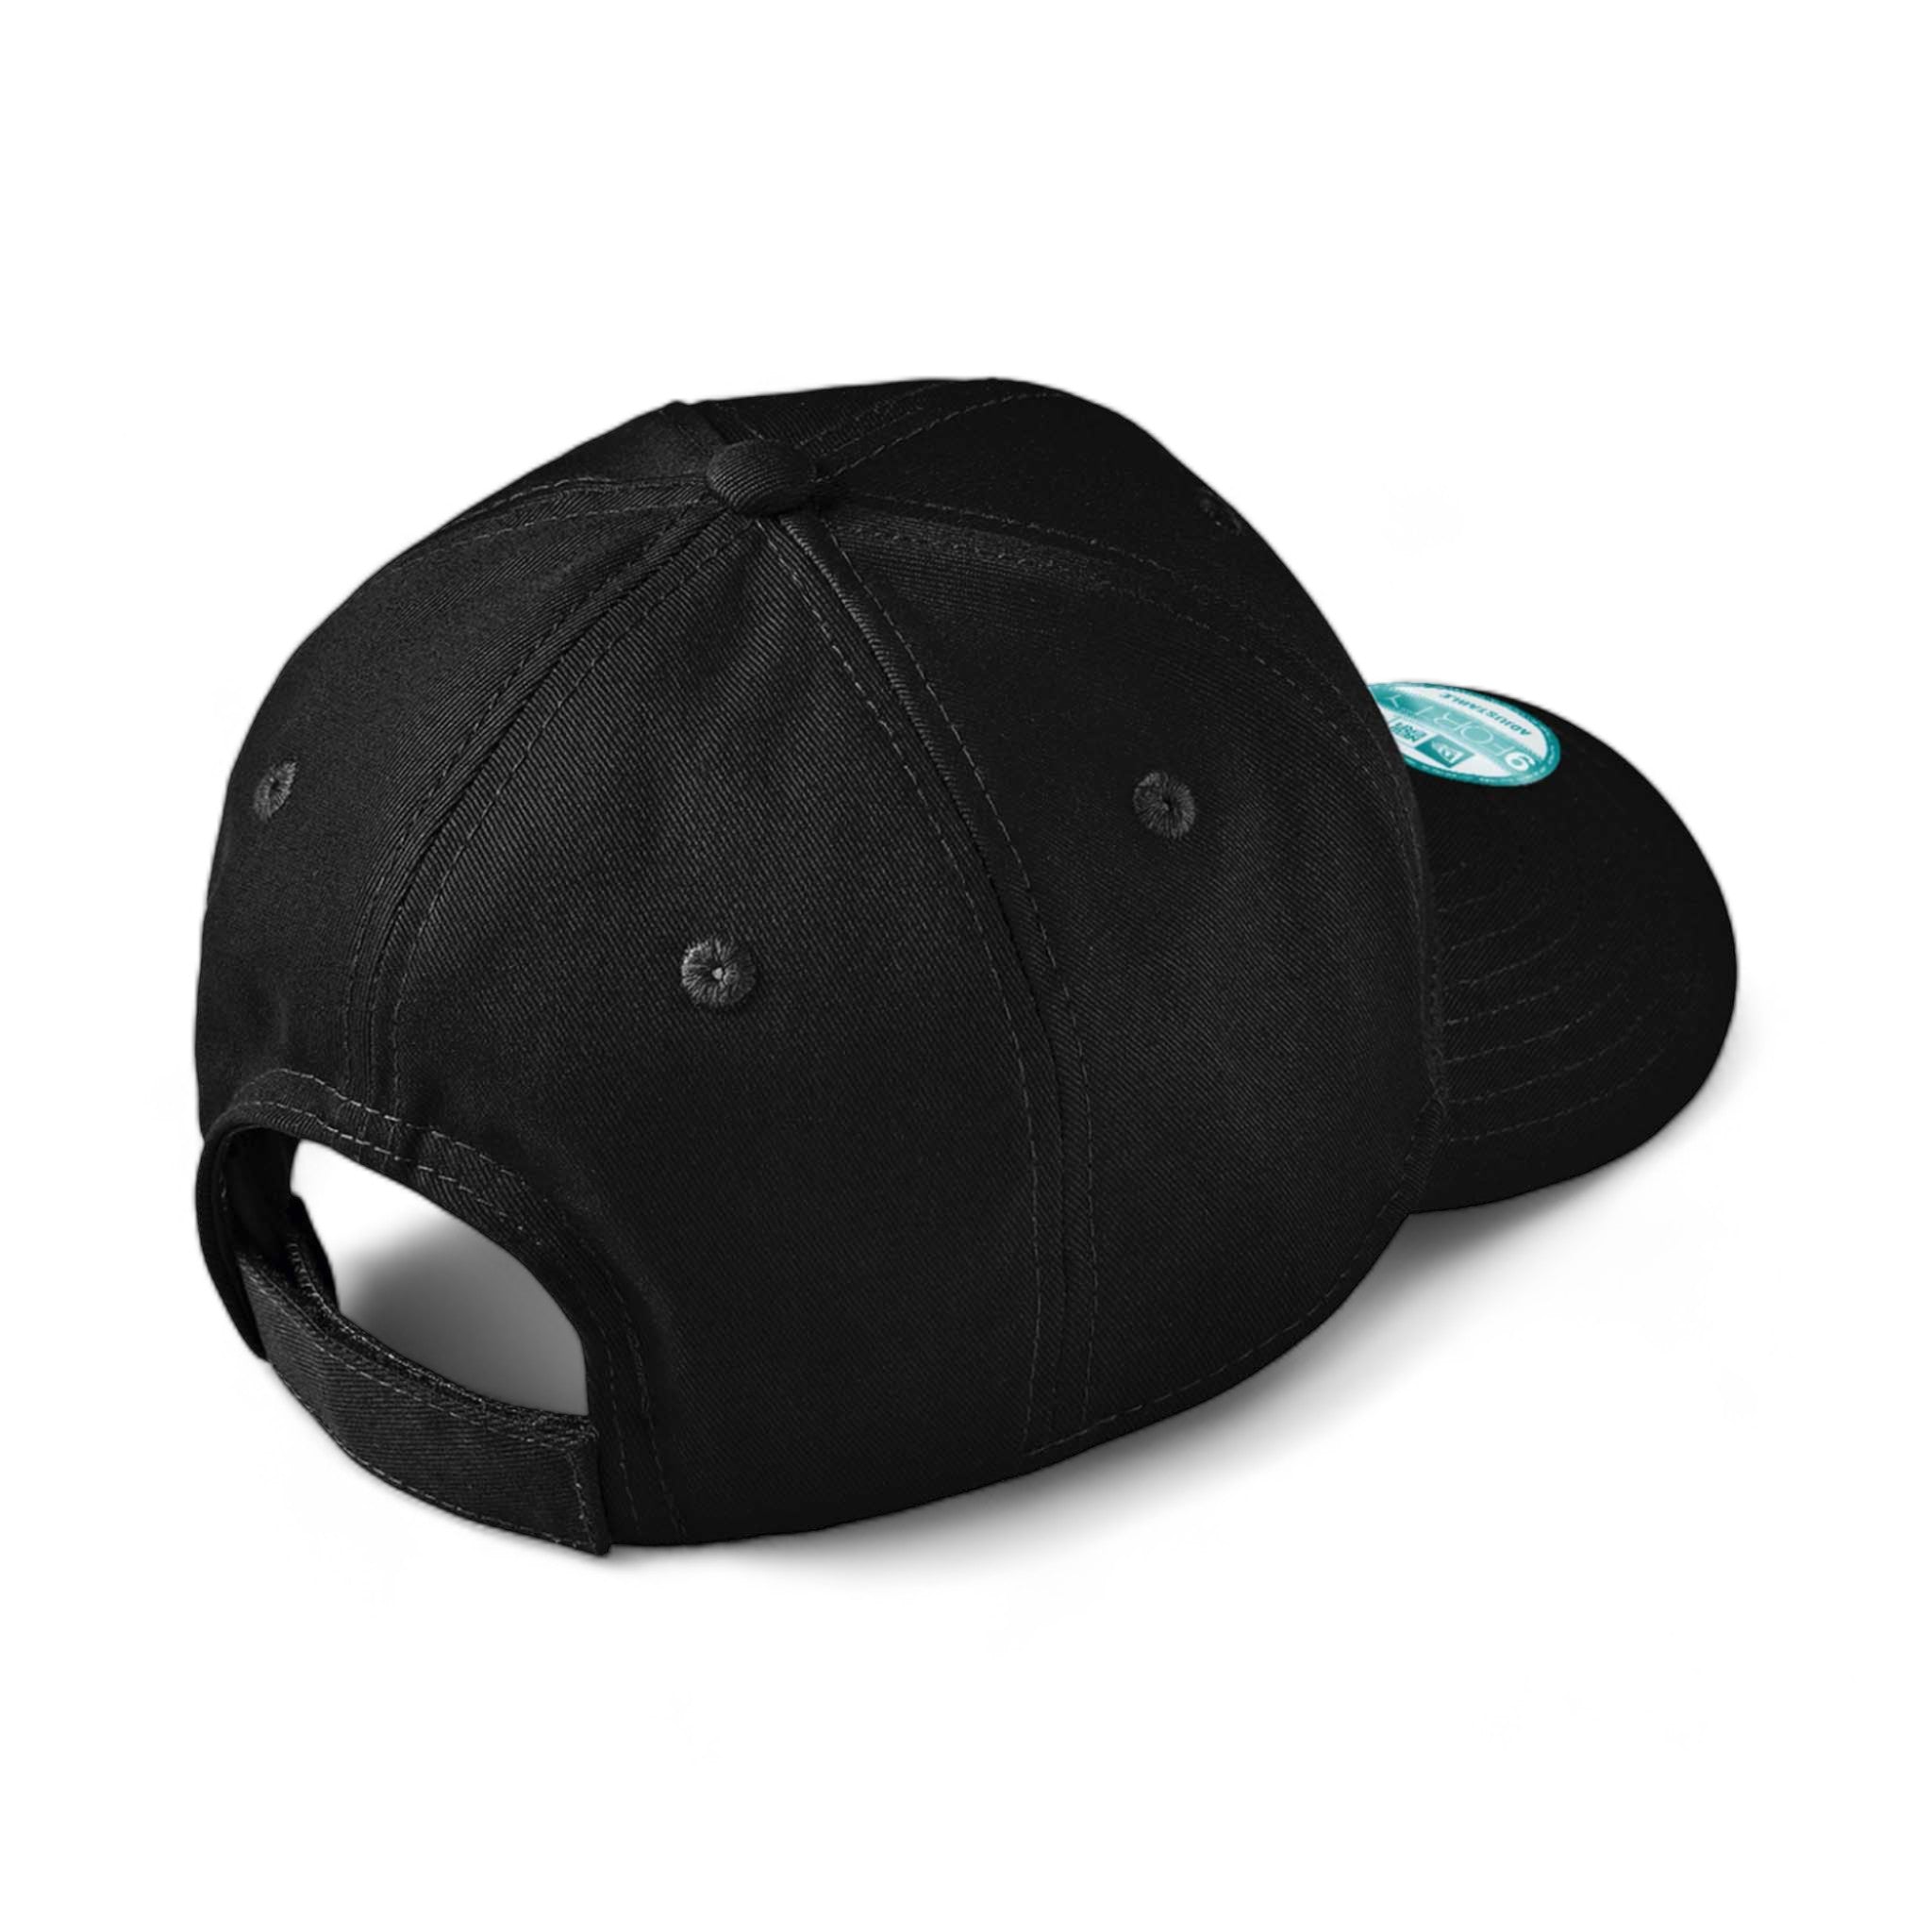 Back view of New Era NE200 custom hat in black